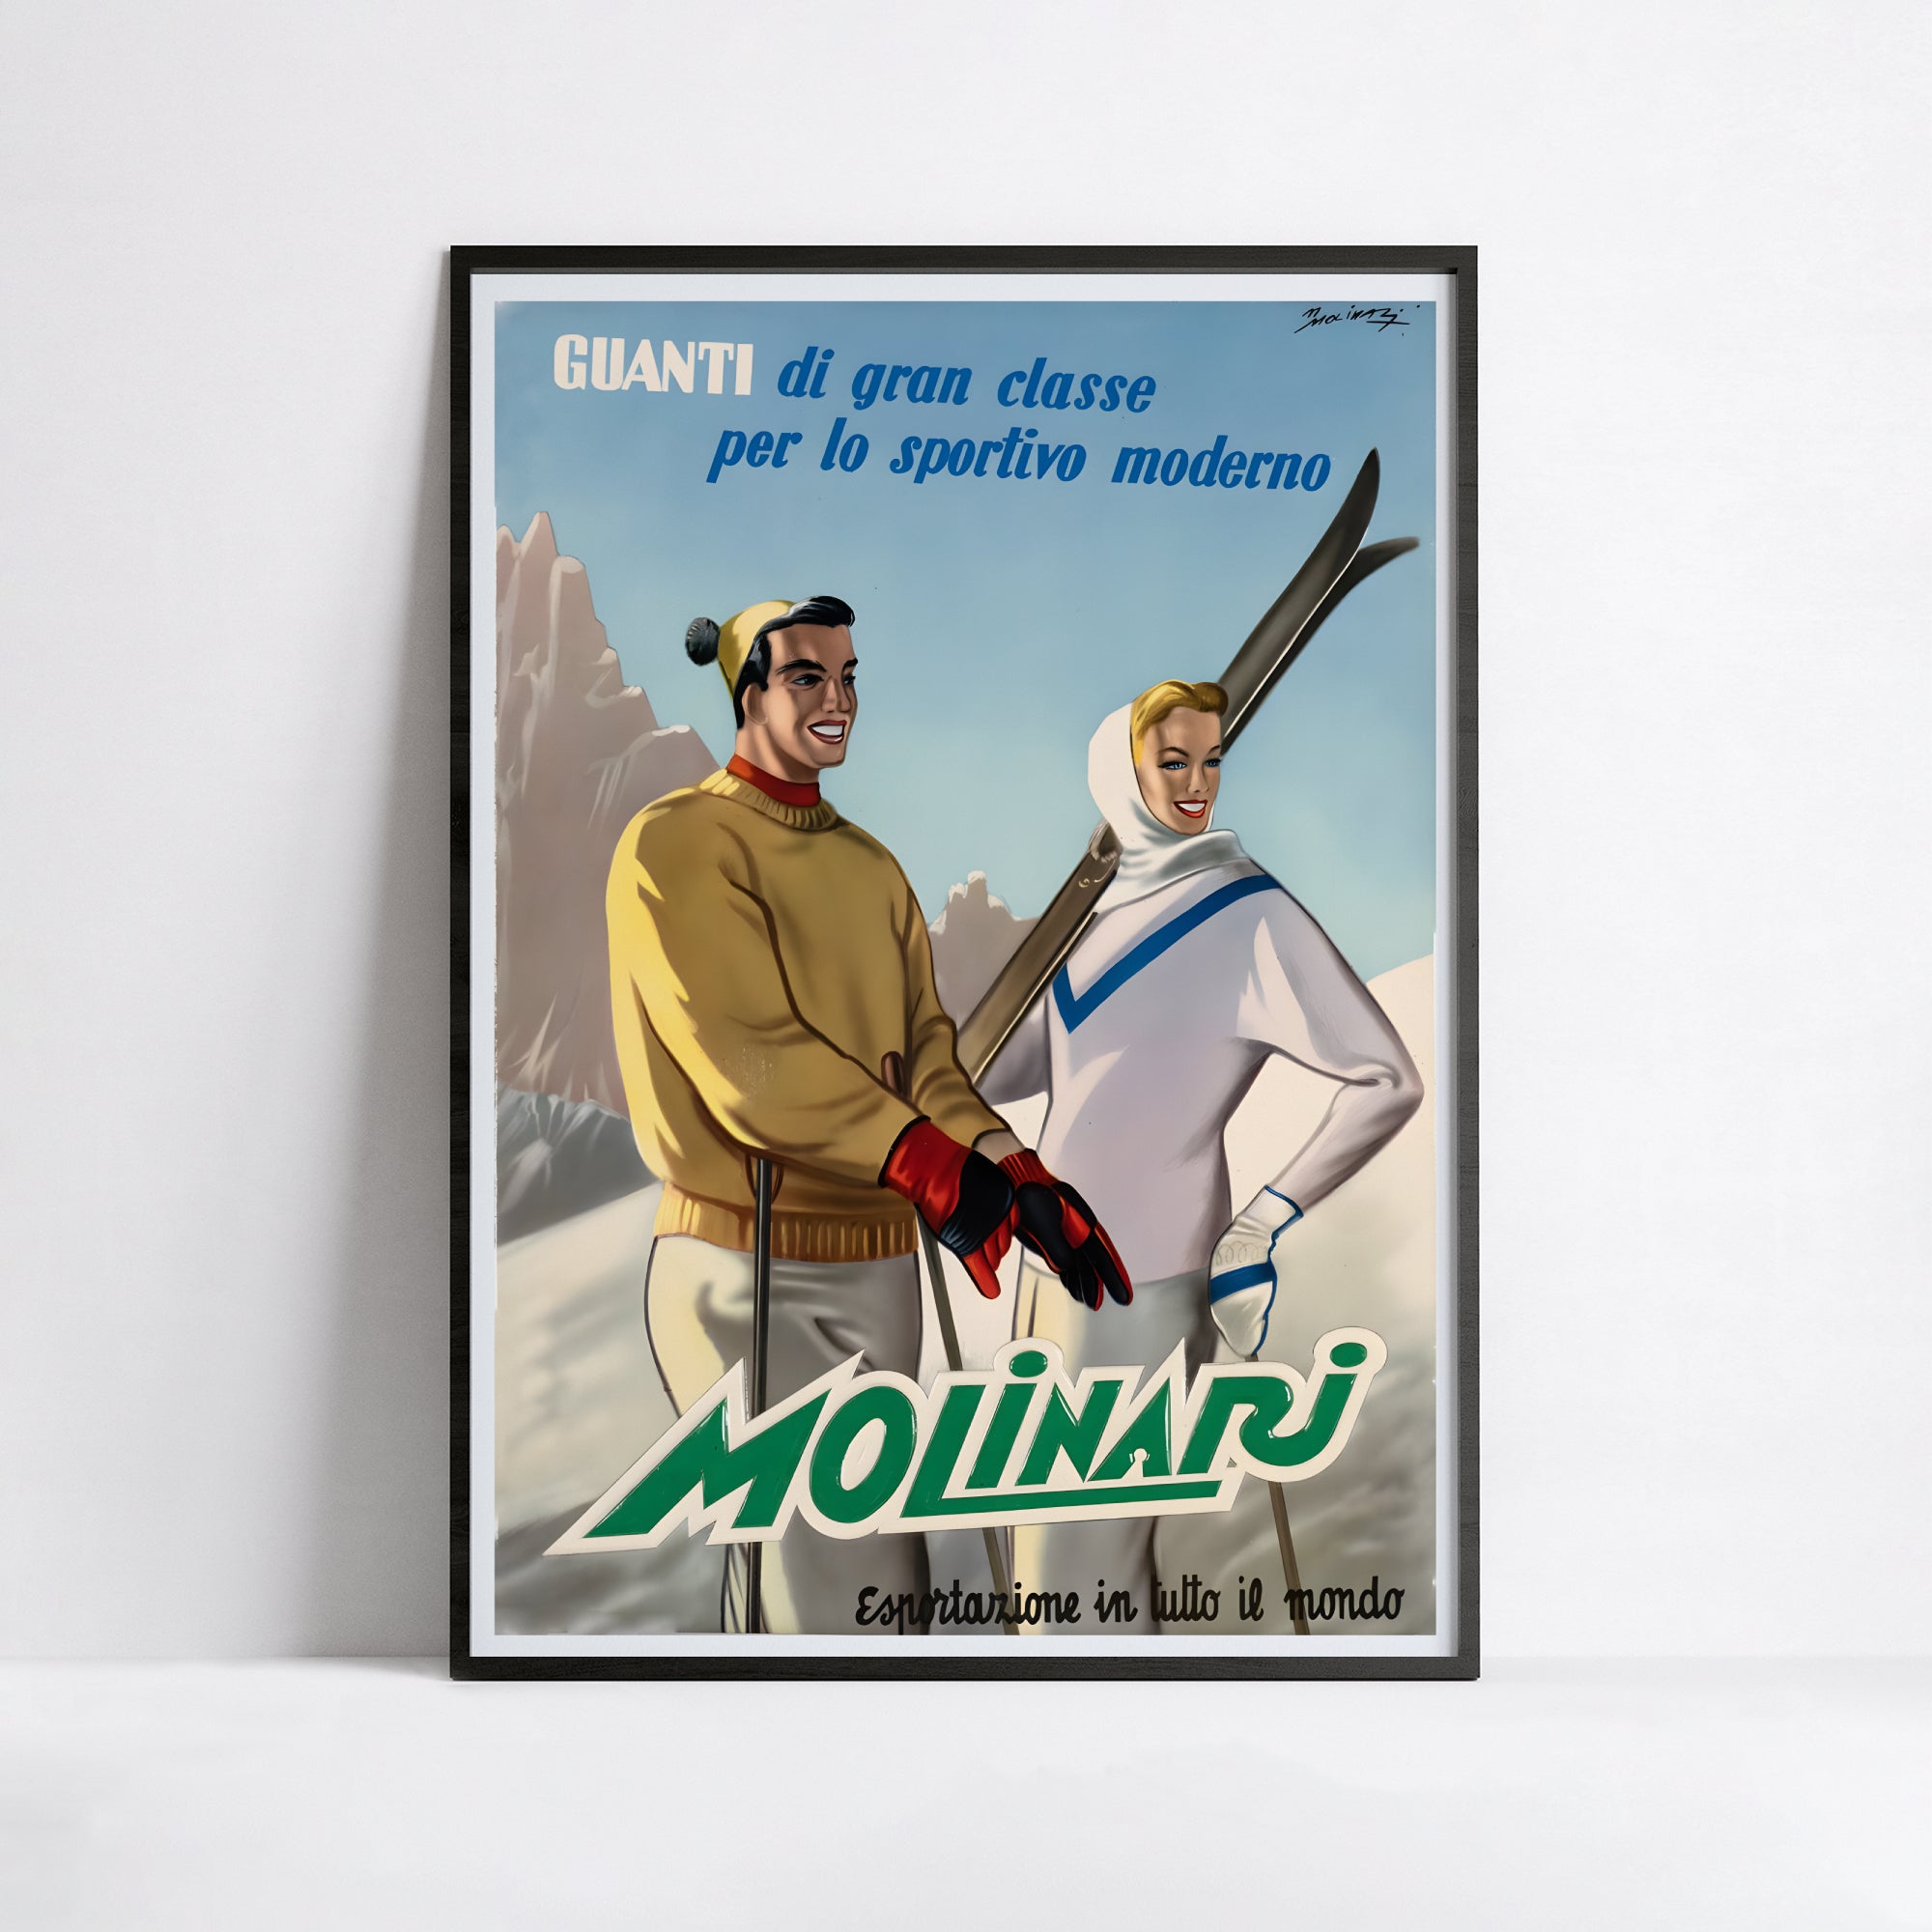 Affiche ski vintage "Molinari" - Italie - Haute Définition - papier mat 230gr/m²